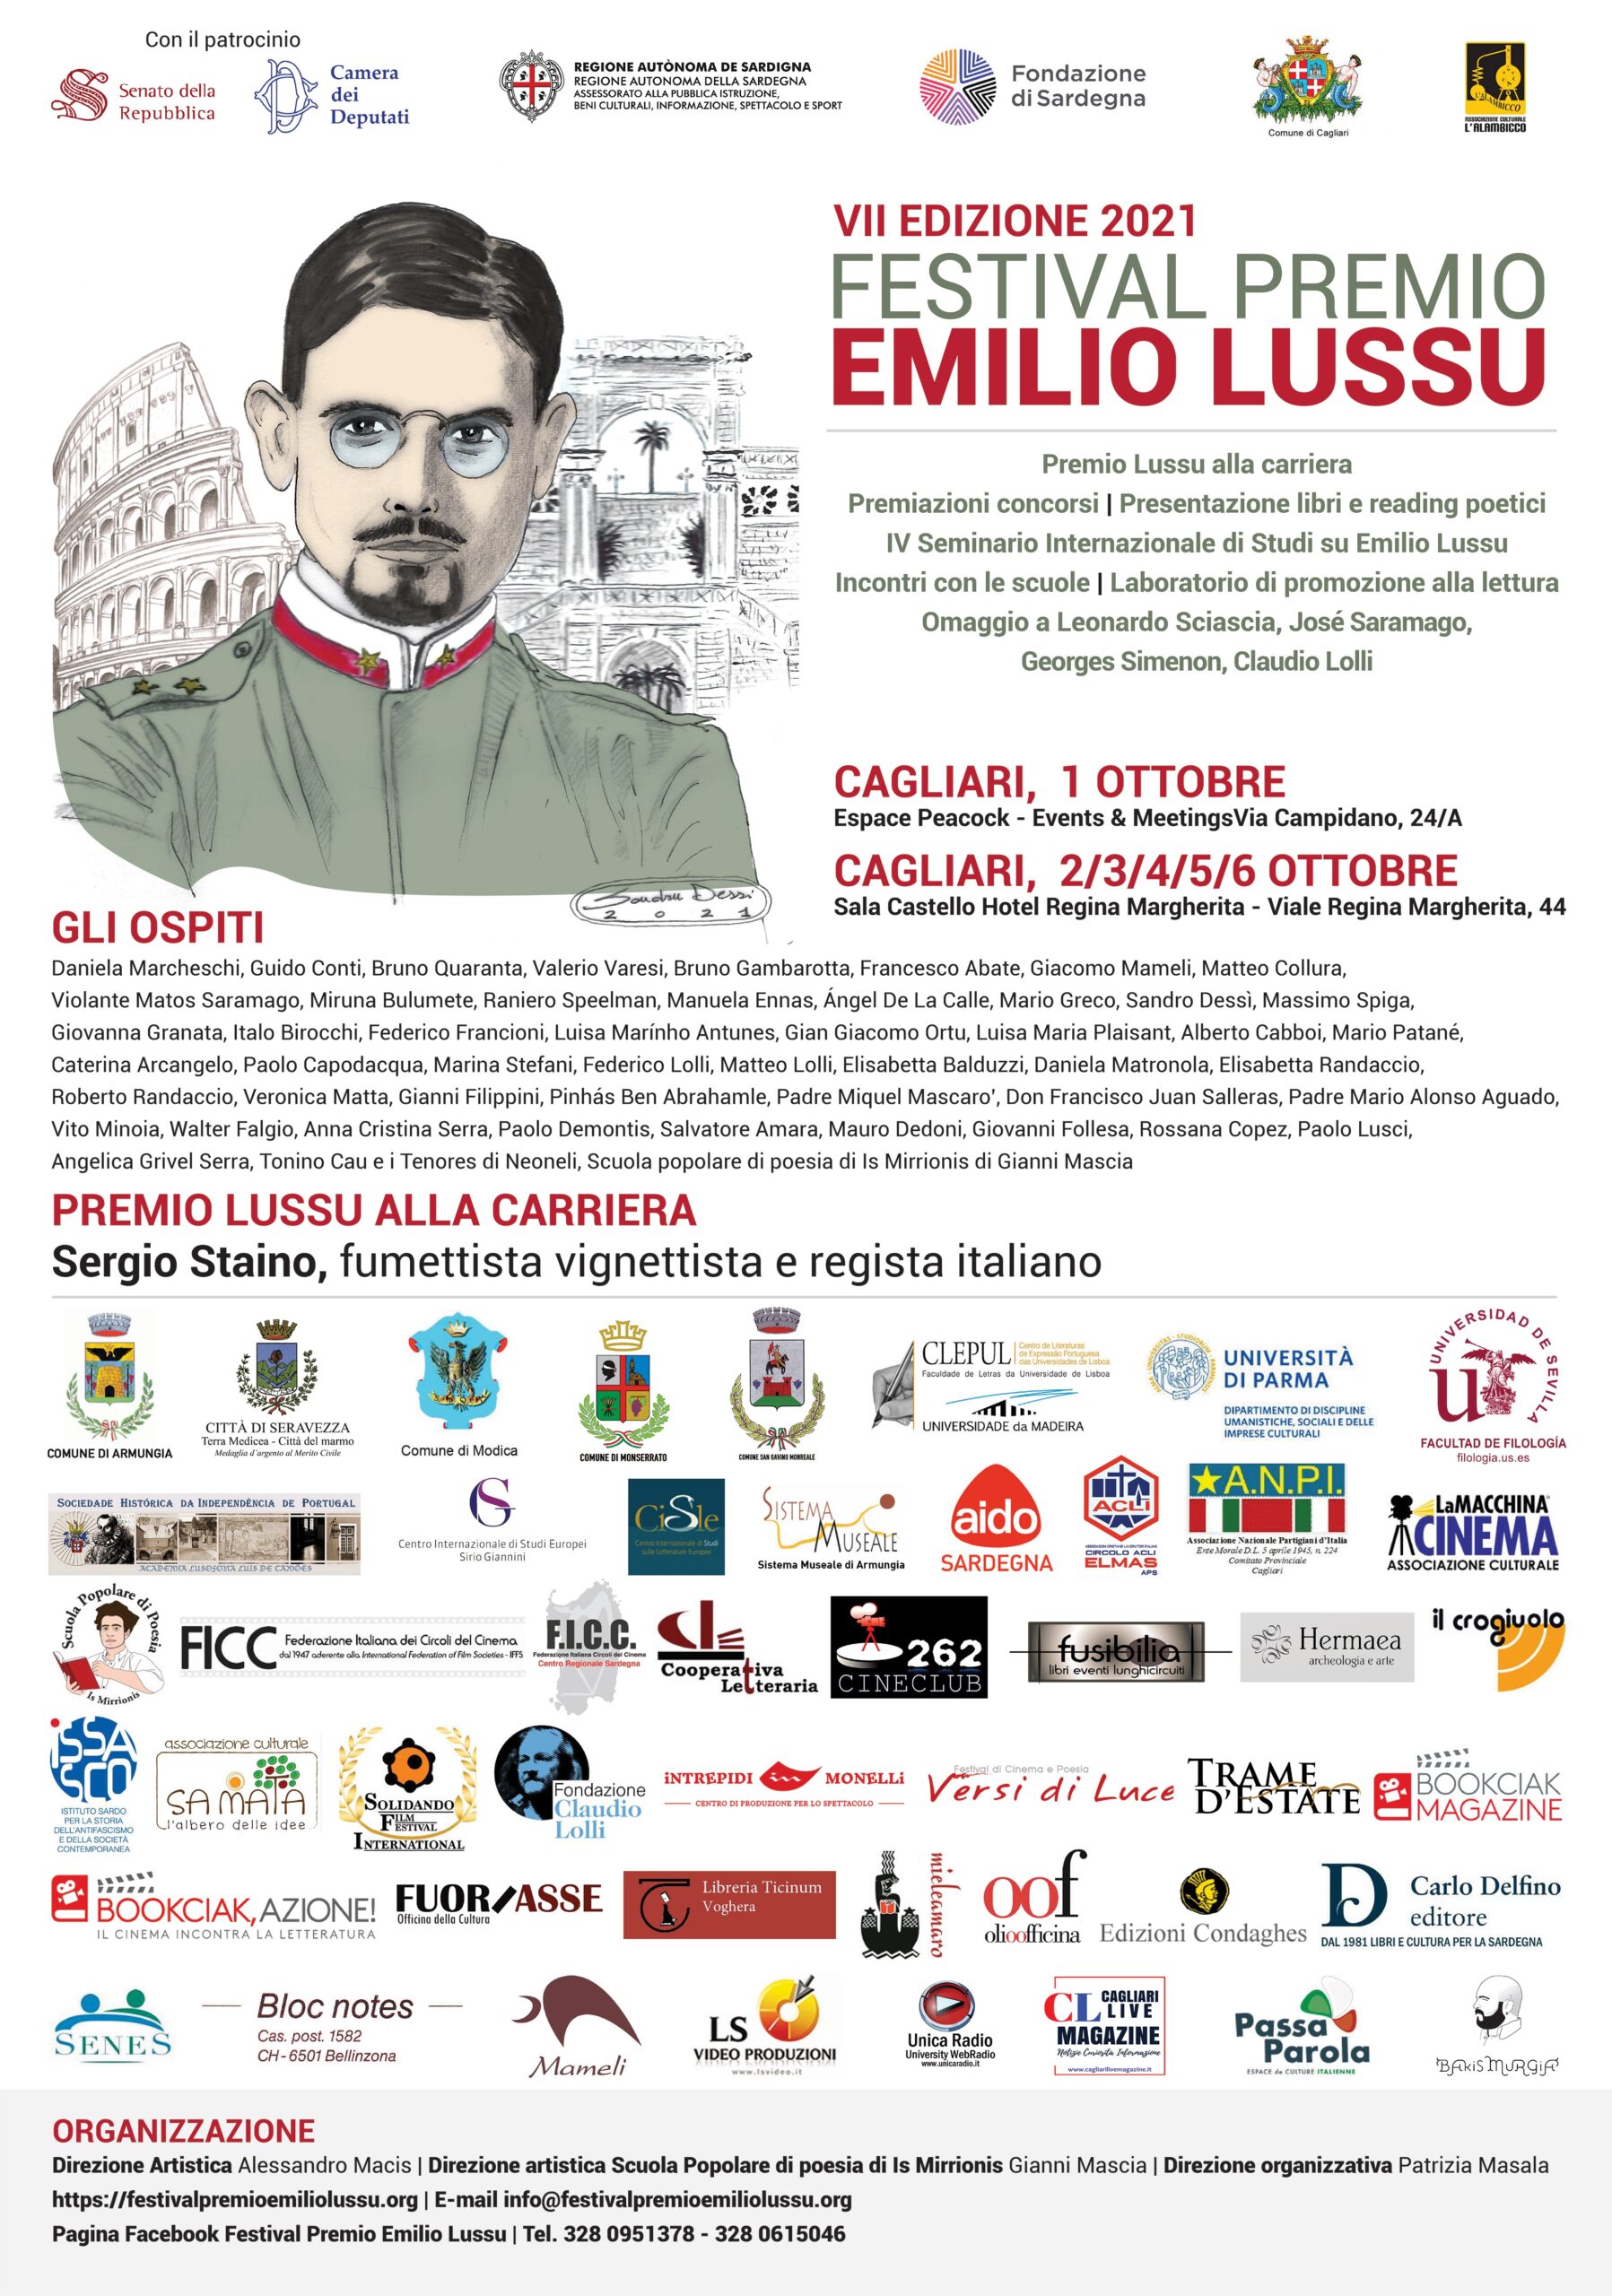 Festival Premio Emilio Lussu 2021